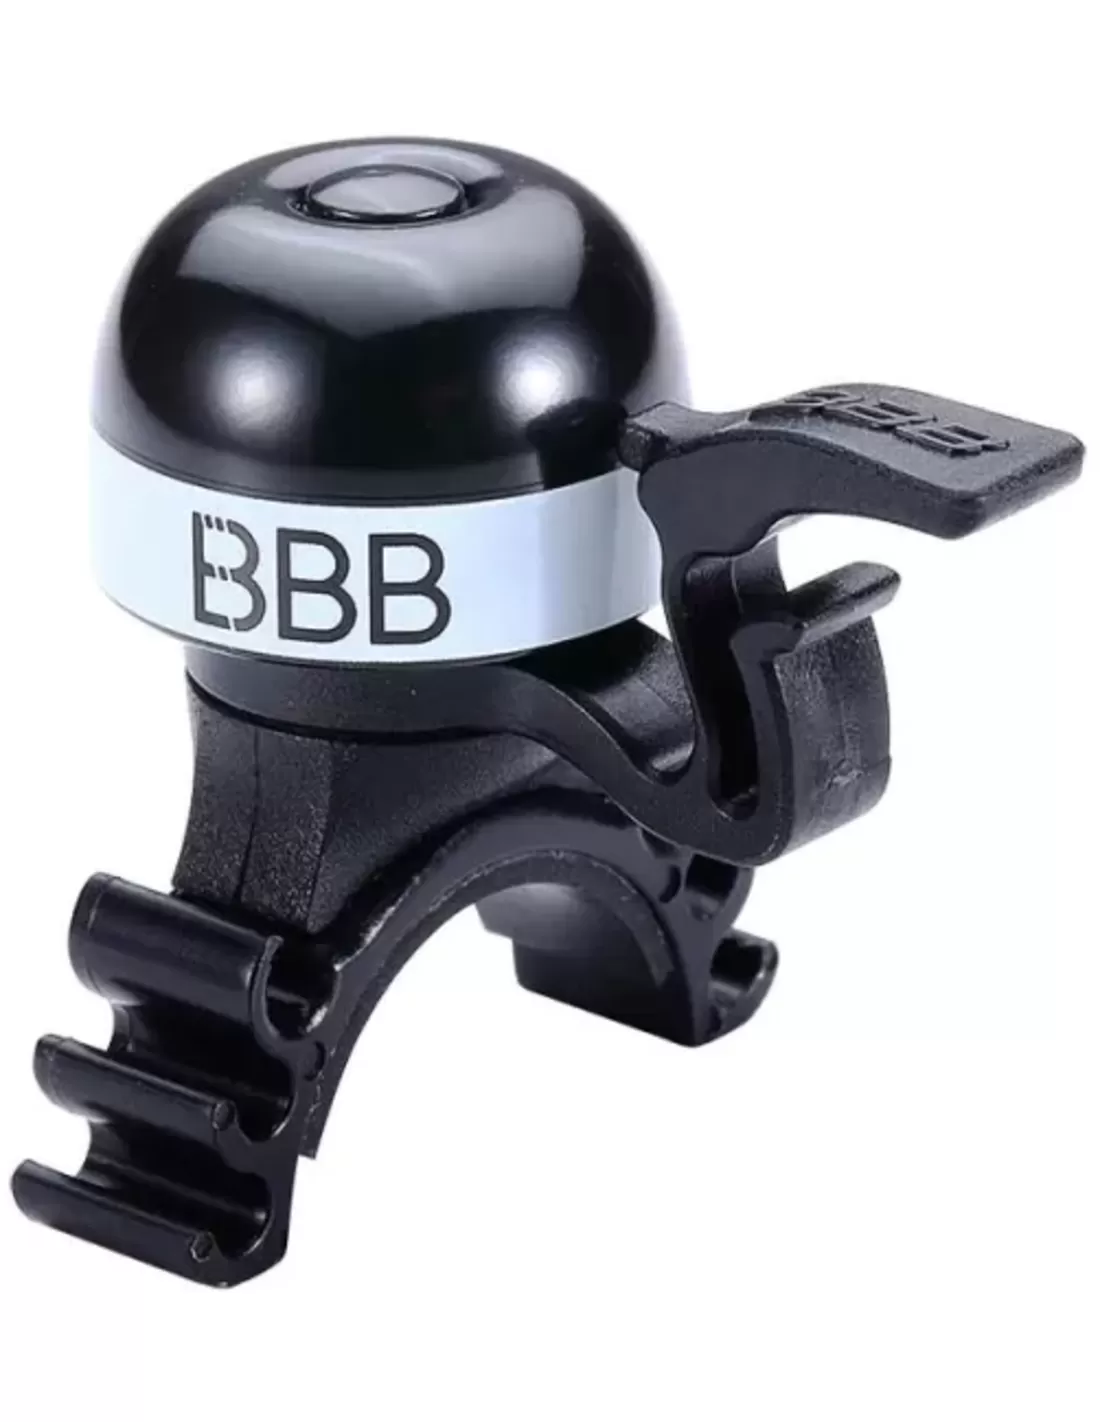 Omtrek rammelaar symbool BBB-16 fietsbel MiniBell zwartwit